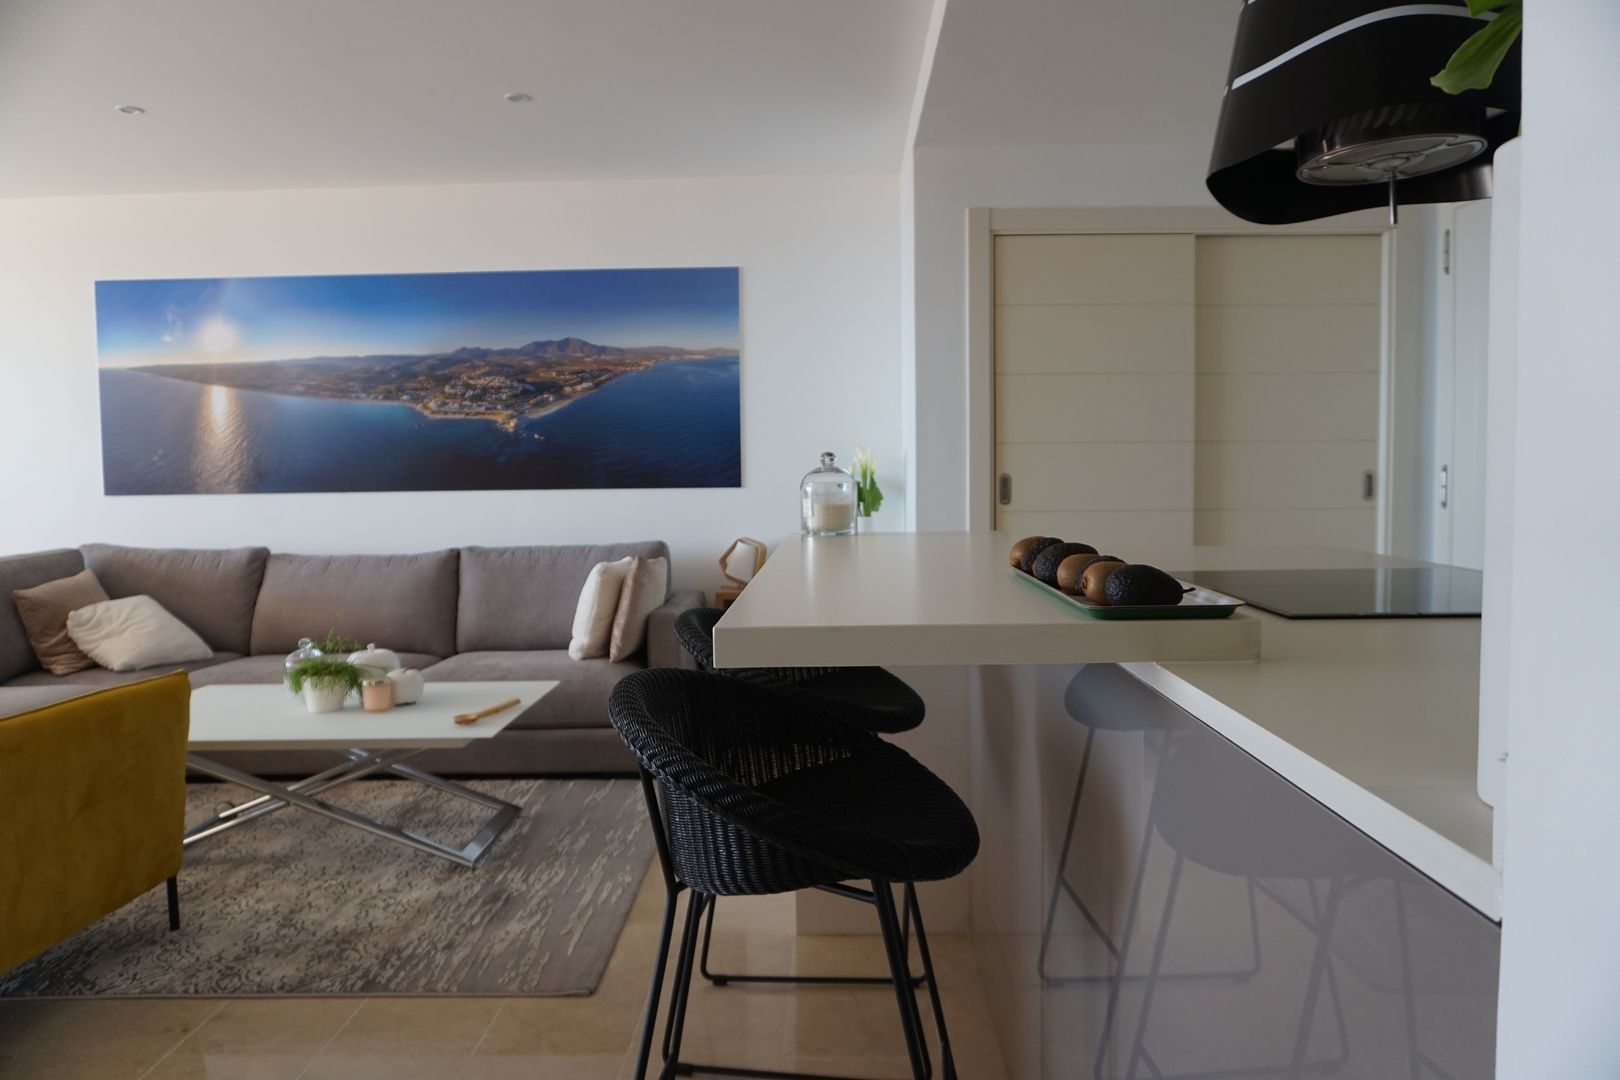 Proyecto e instalación de cocina moderna abierta al salón en Málaga, Decodan - Estudio de cocinas y armarios en Estepona y Marbella Decodan - Estudio de cocinas y armarios en Estepona y Marbella ครัวบิลท์อิน